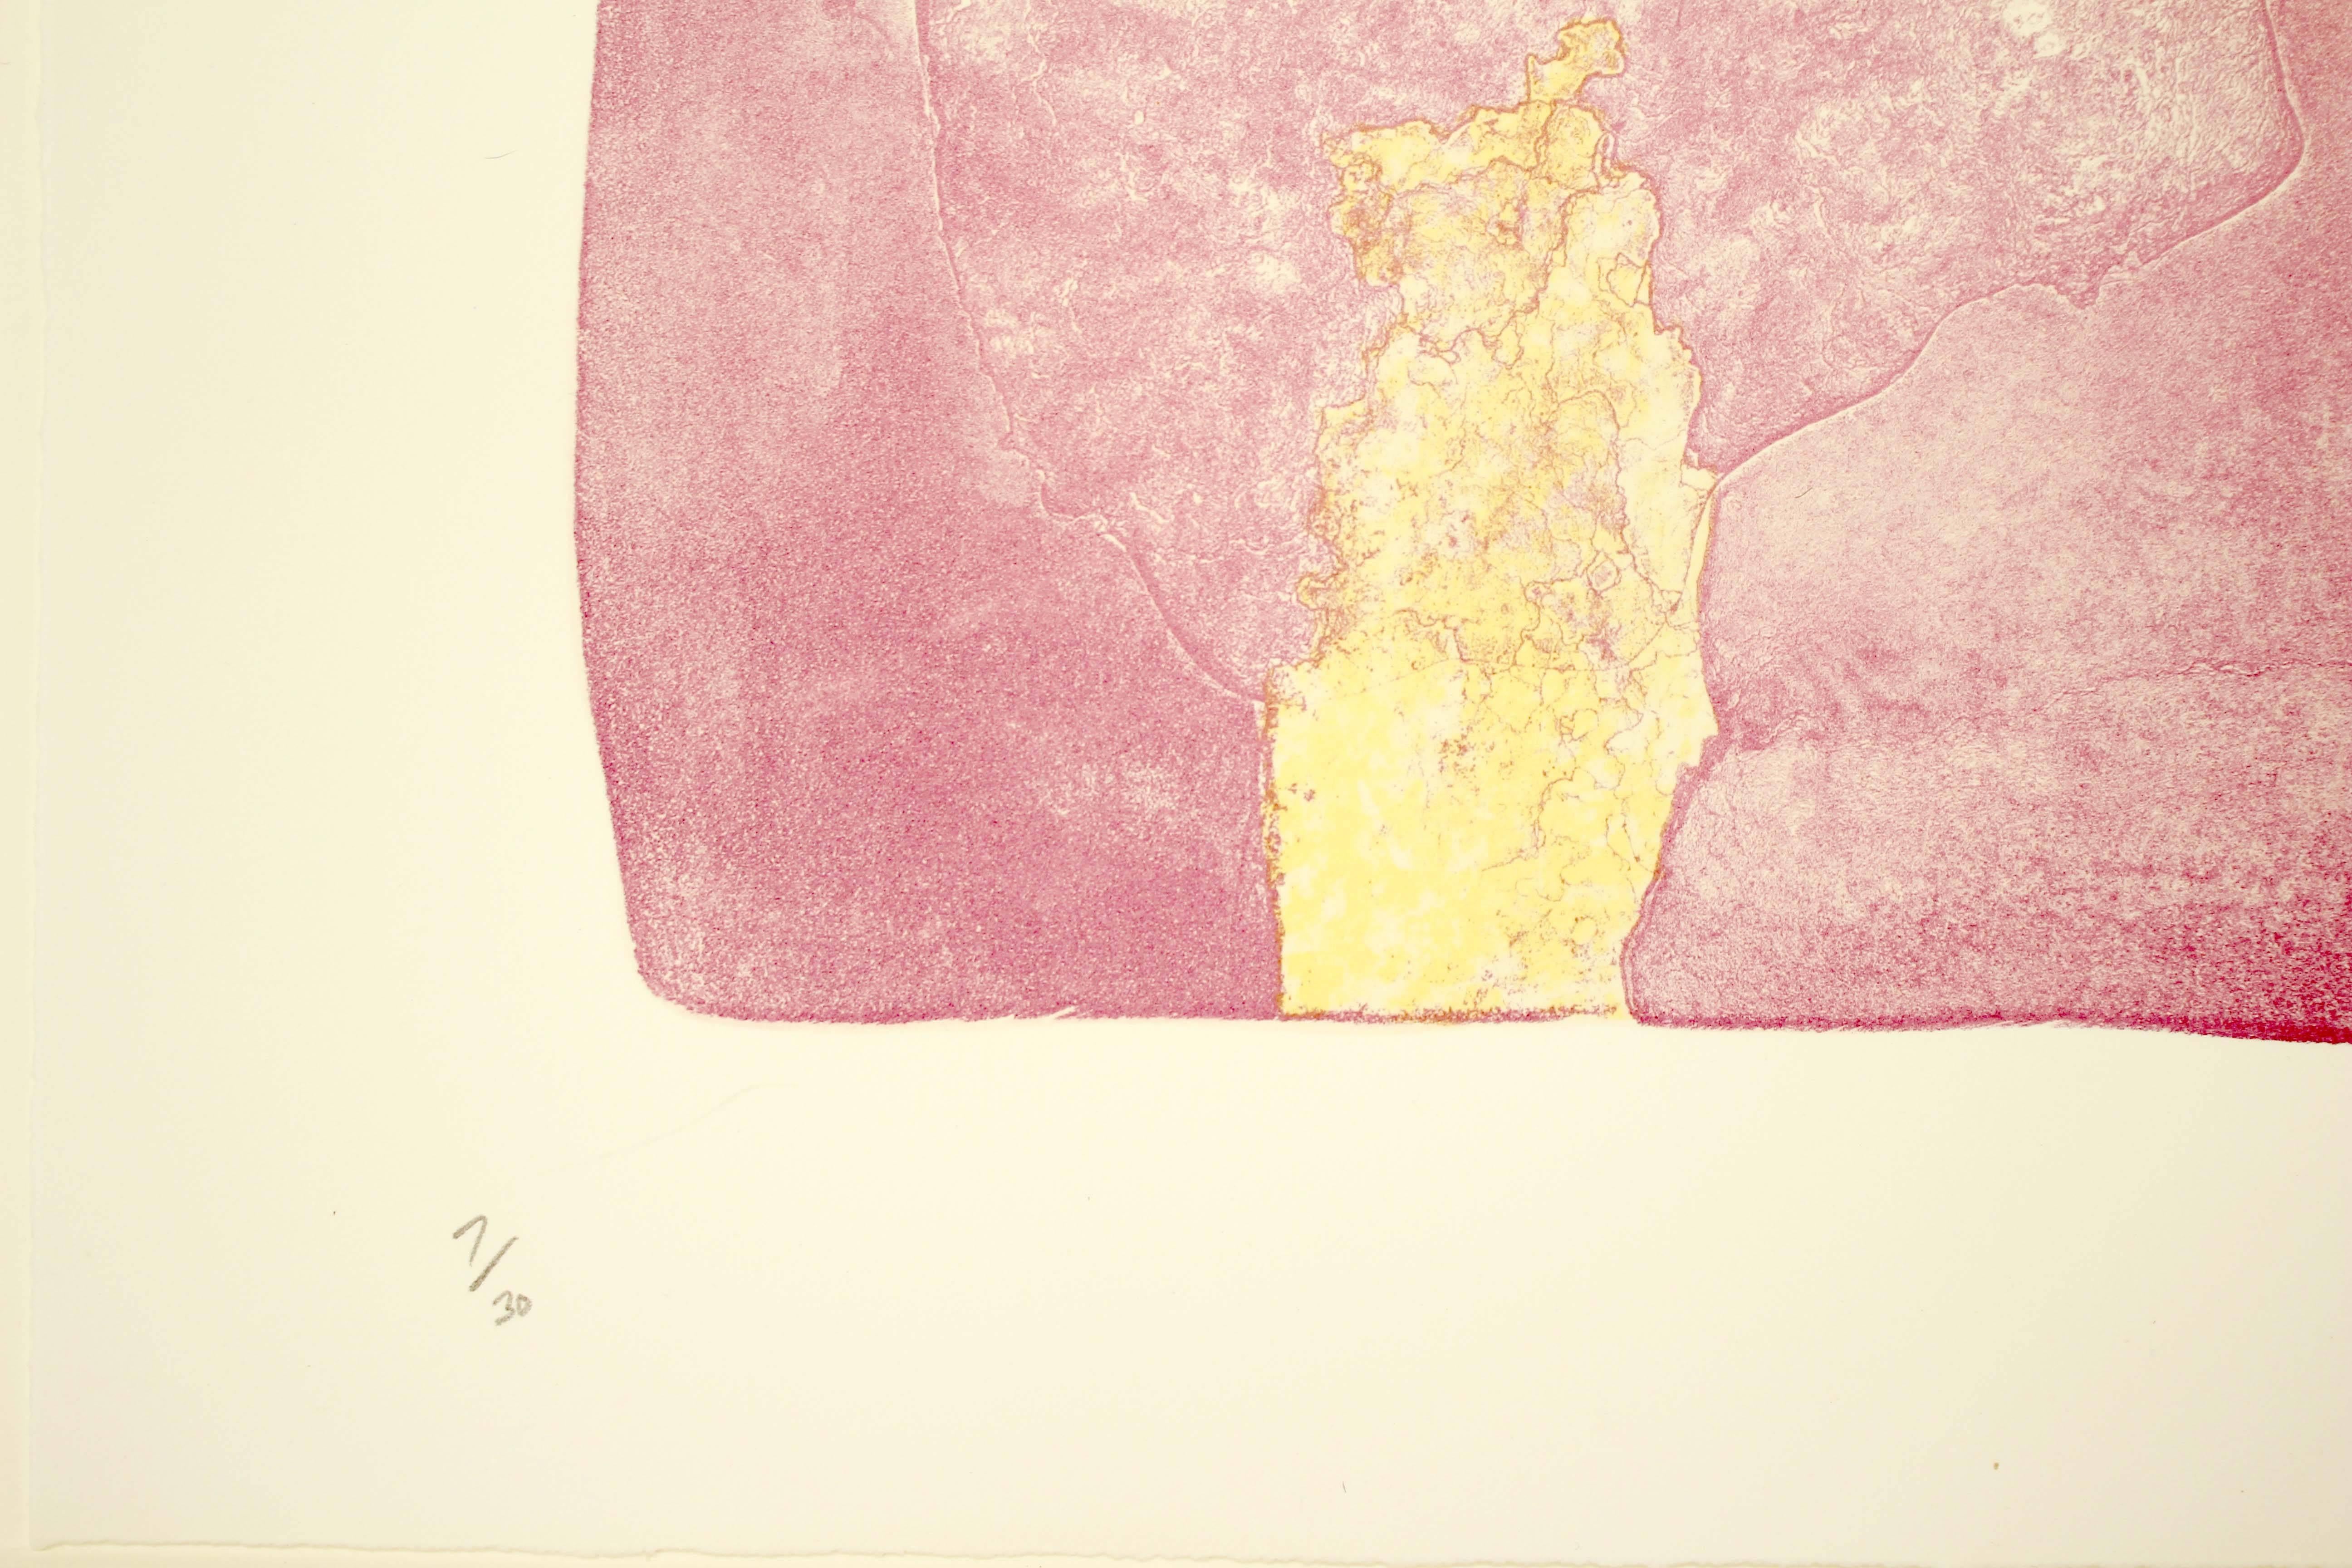 Helen Frankenthaler, Reflections X, 1995, (7/30), lithograph 1